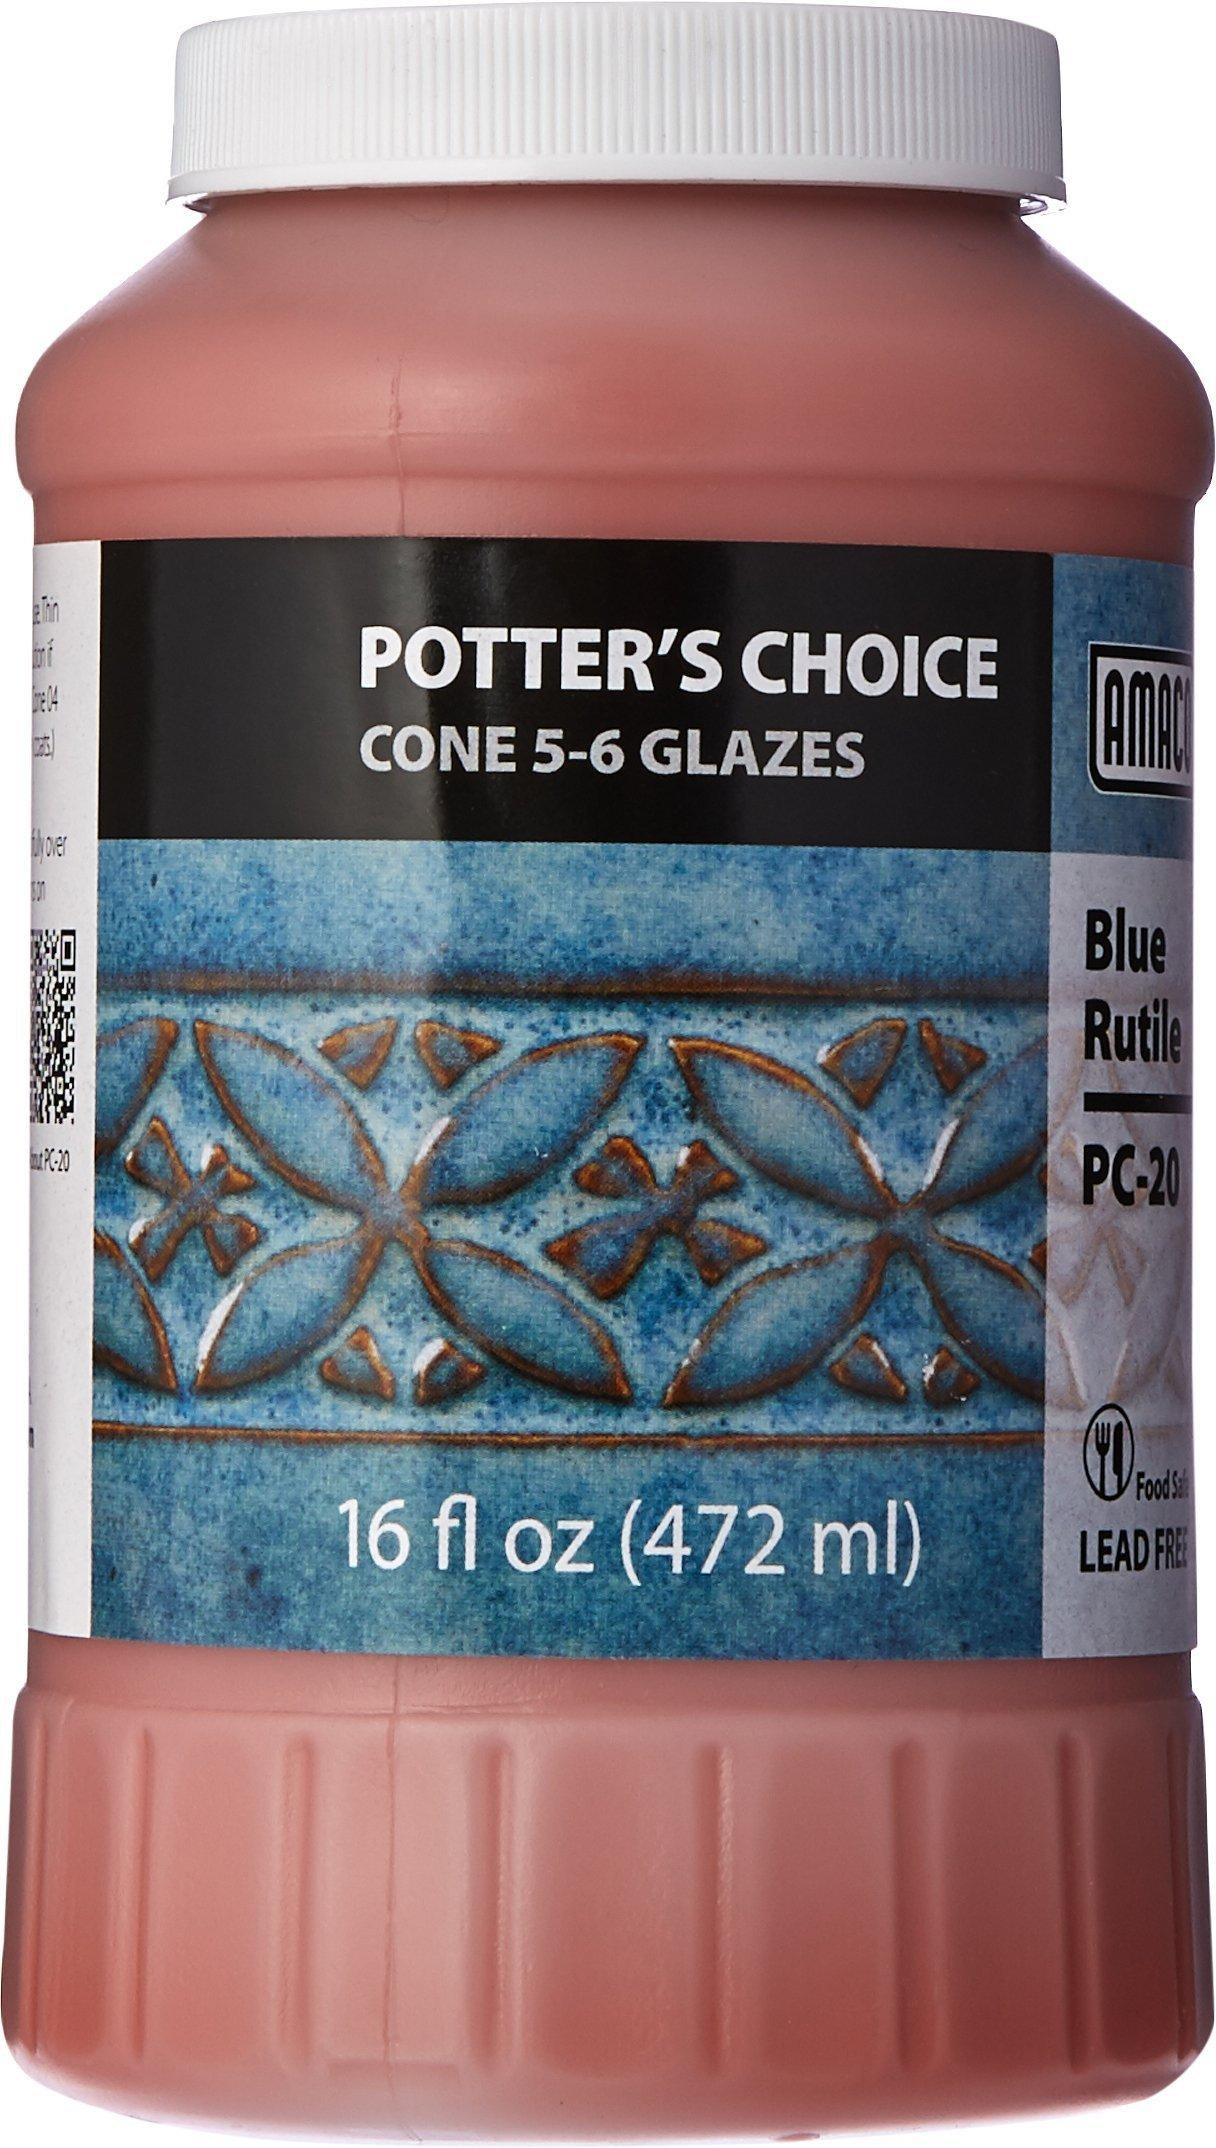 AMACO Potters Choice Glaze, Blue Rutile PC-20, 1 Pint - 35401D